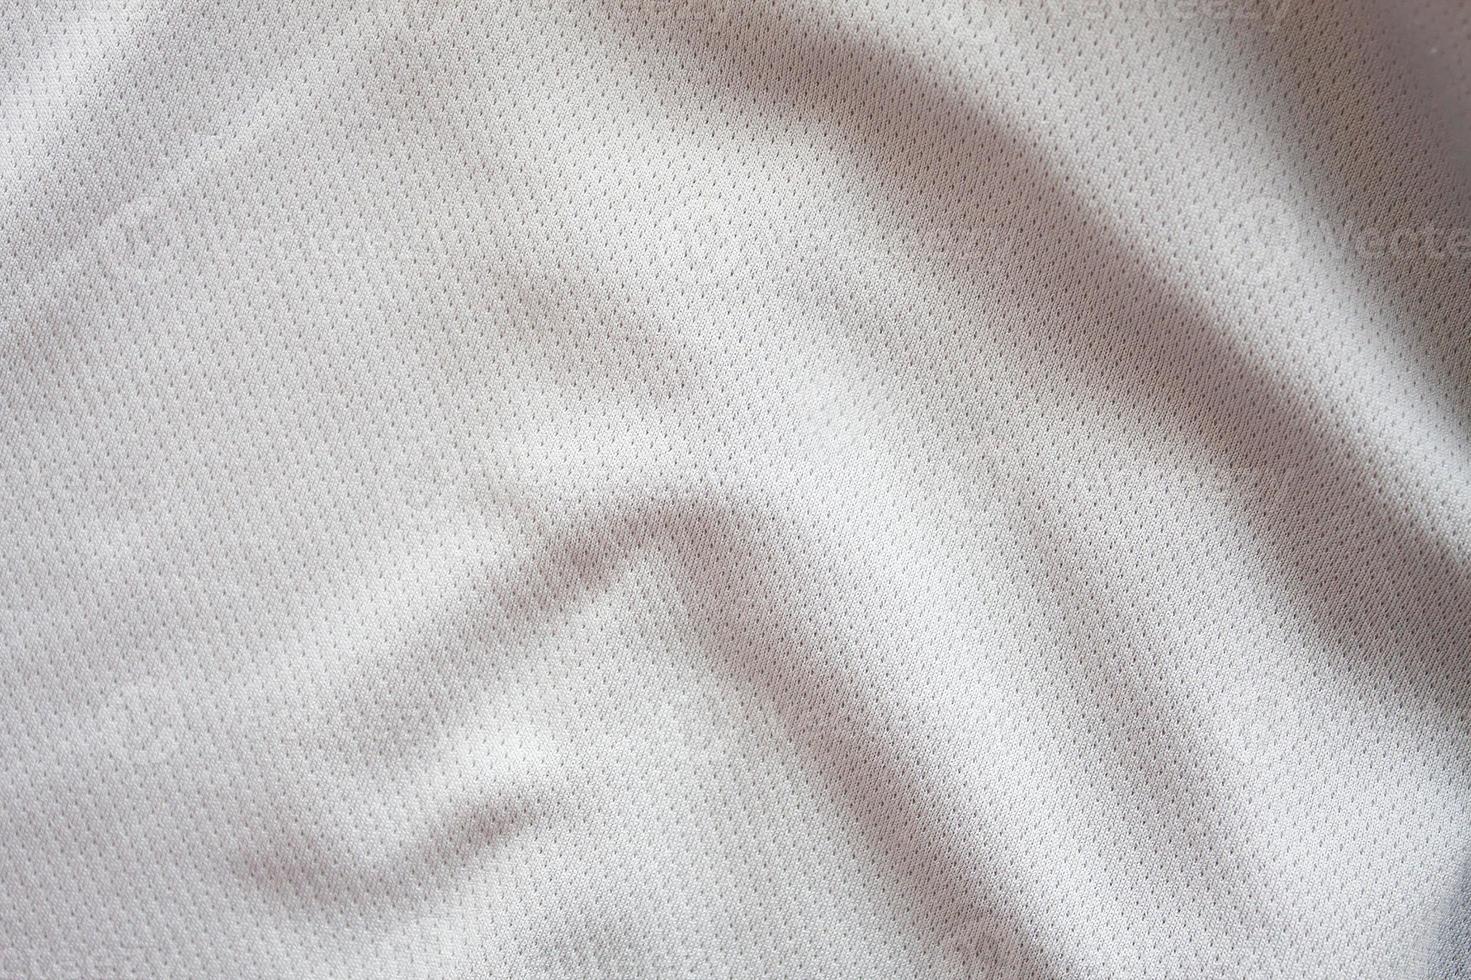 gros plan de maillot de football texturé blanc photo